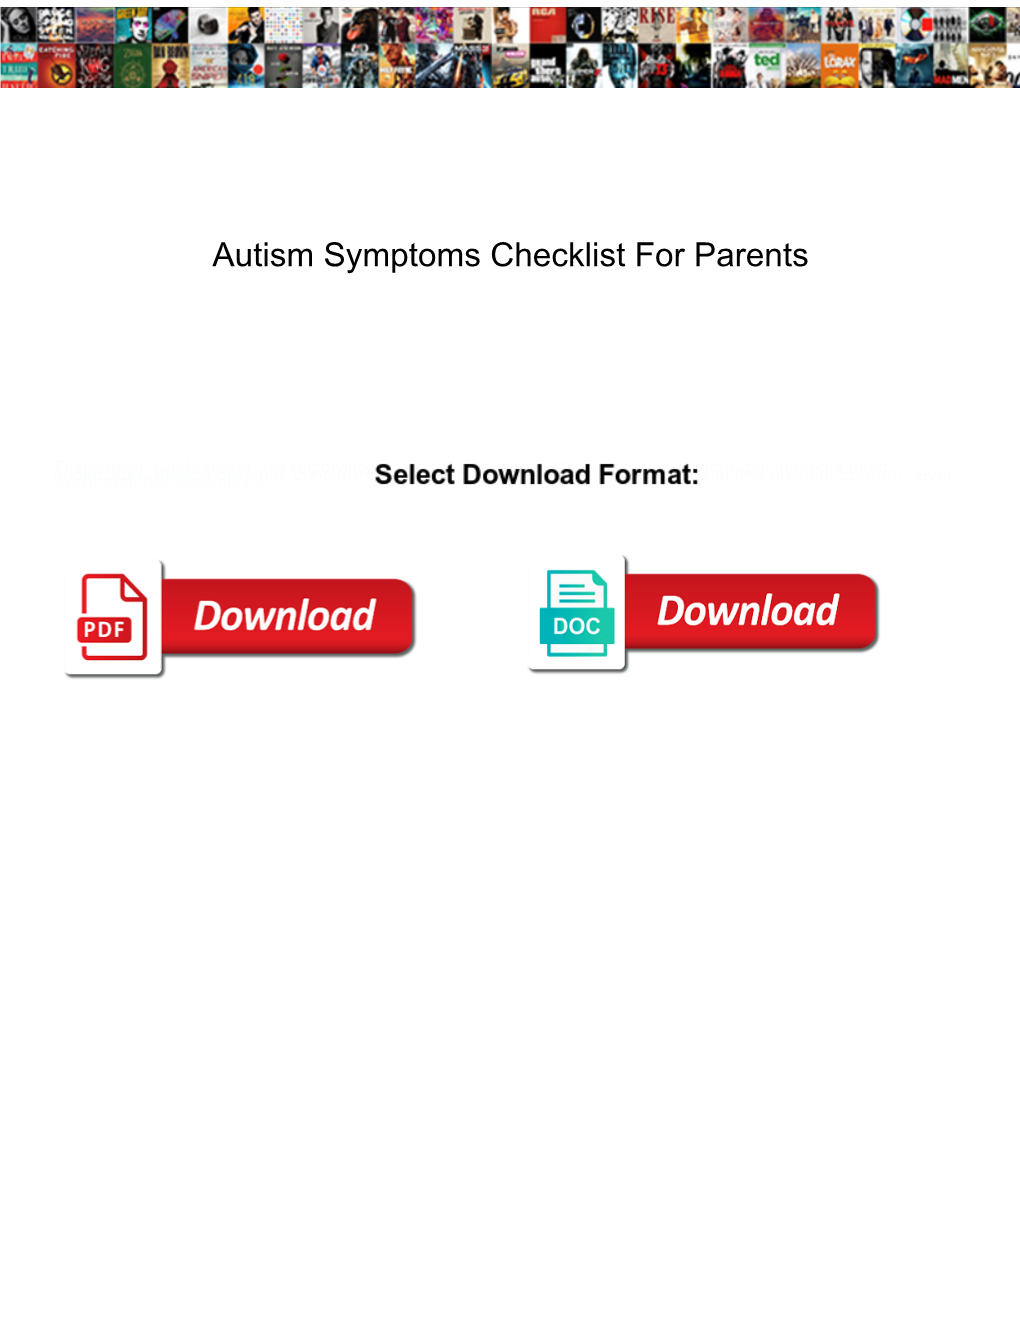 Autism Symptoms Checklist for Parents